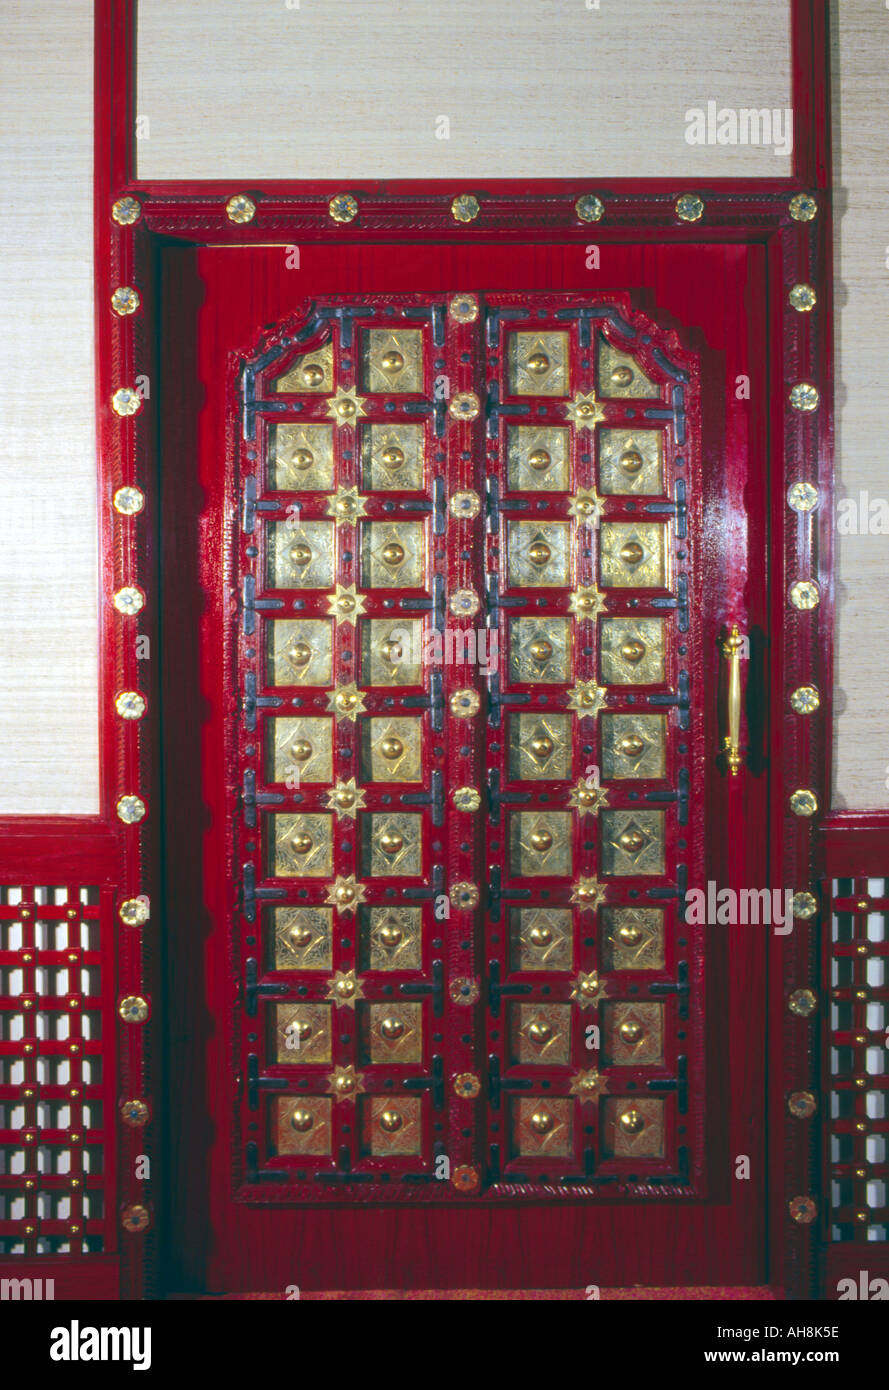 AAD71474 Wooden door Brass fittings Stock Photo